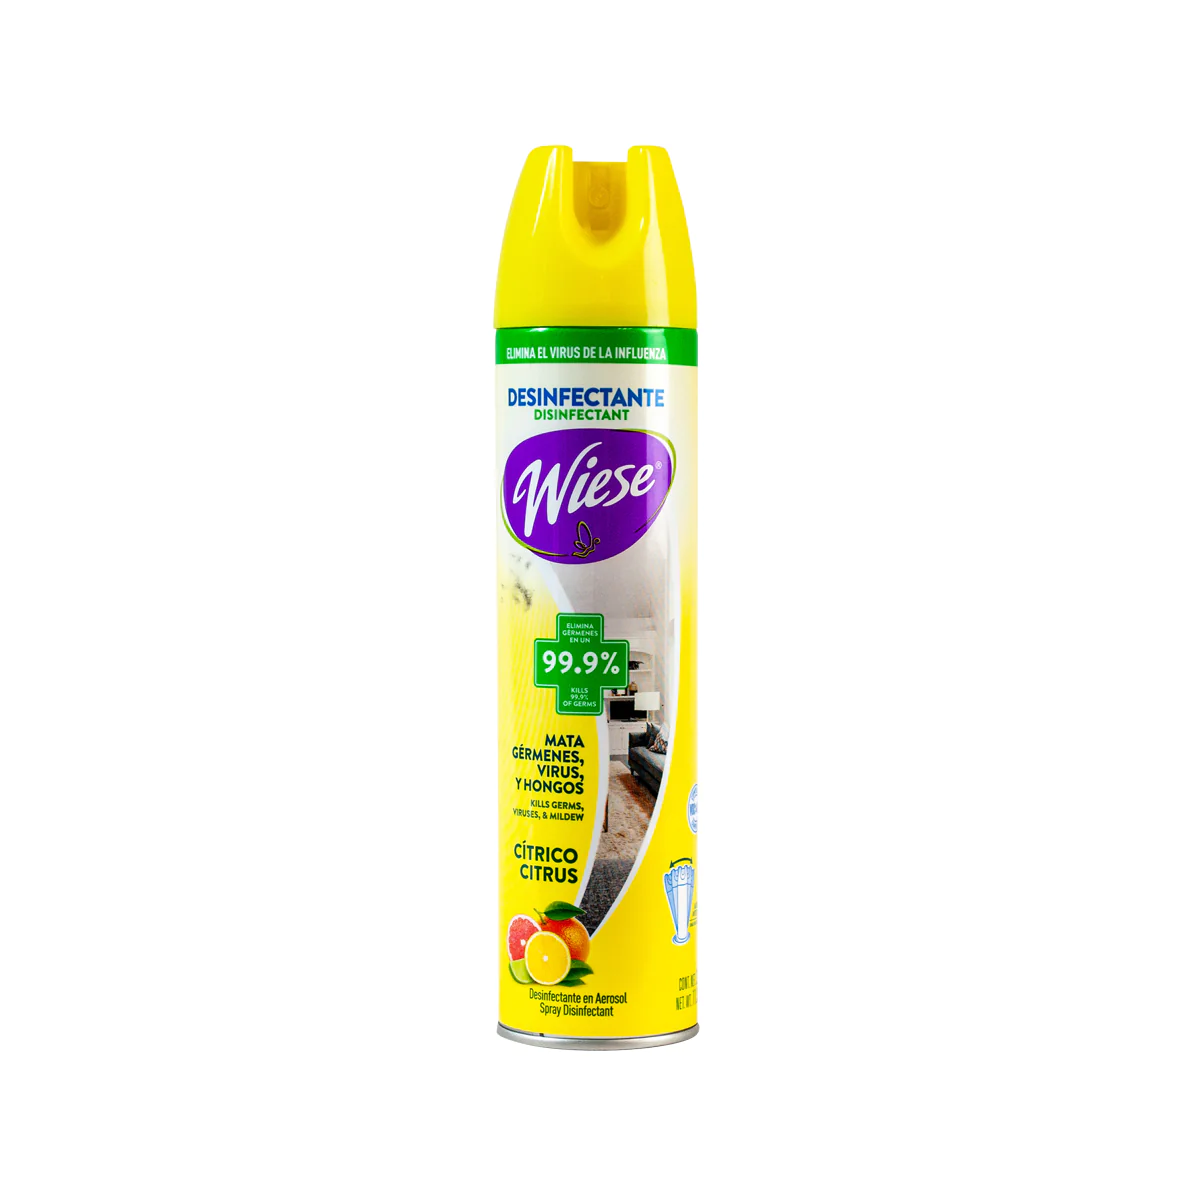 Aerosol desinfectante Wiese 323 gr.      Desinfectante elimina hasta el 99 por ciento de germenes, previene el moho, elimina bacterias causantes de malos olores. fragancia citrica                                                                                                                      .                                        - NAEHO52